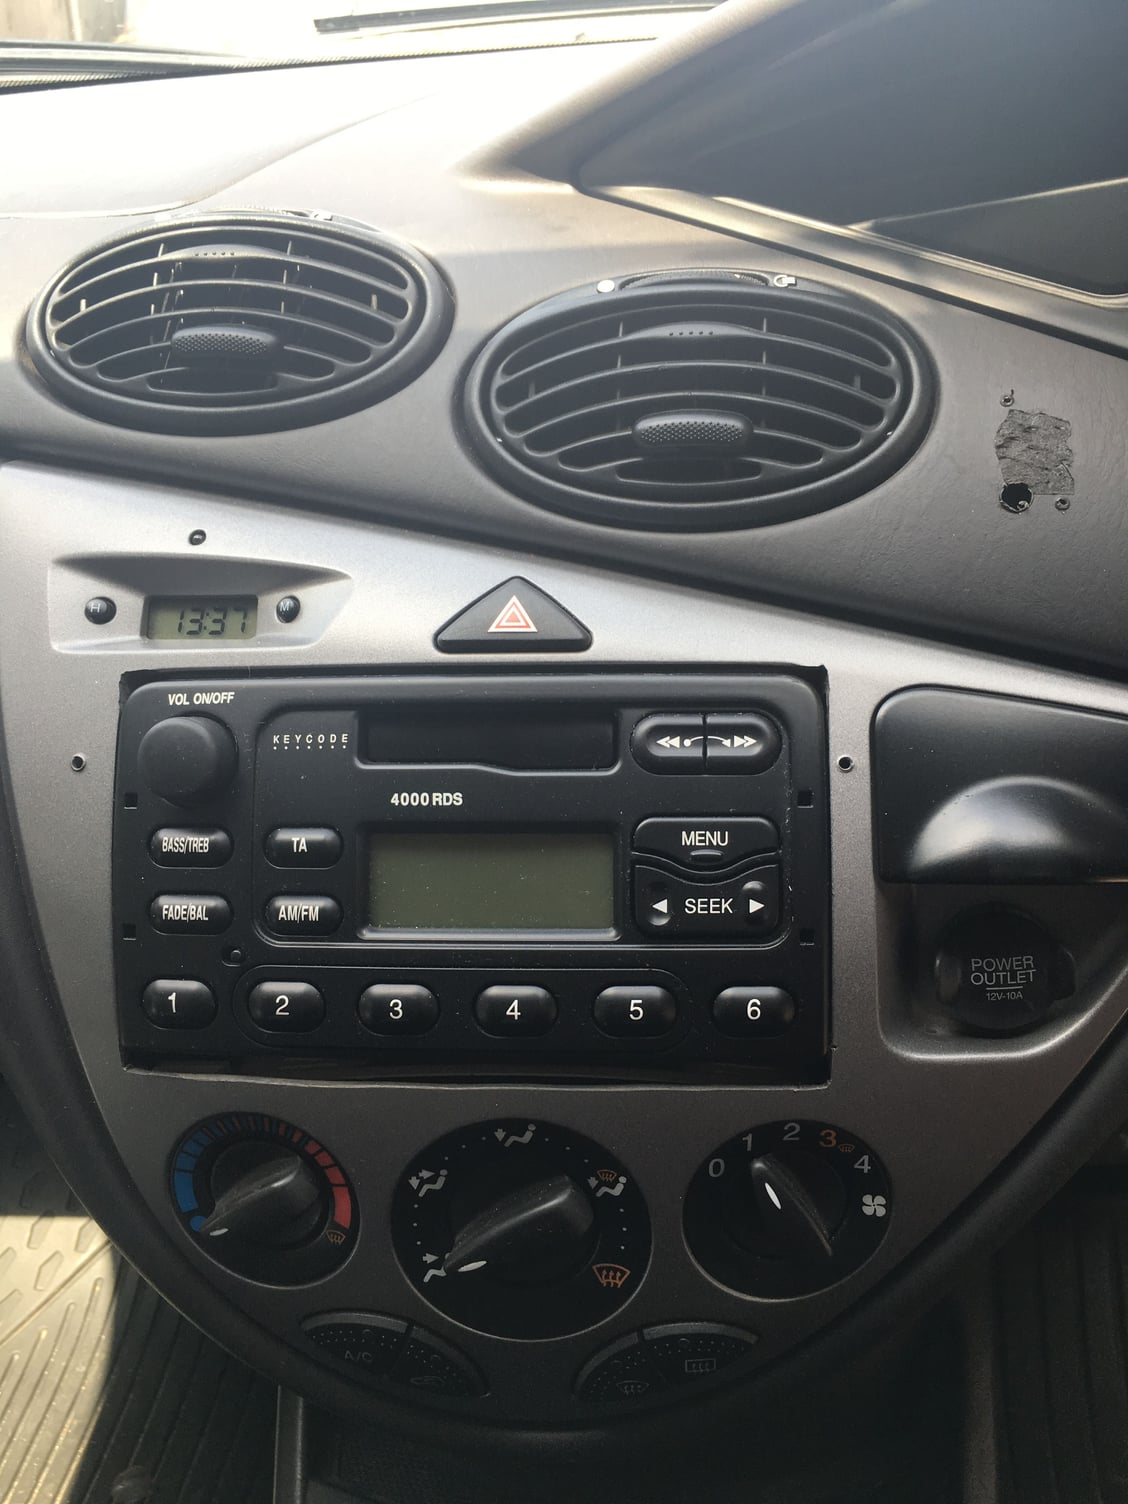 2001 ford focus radio